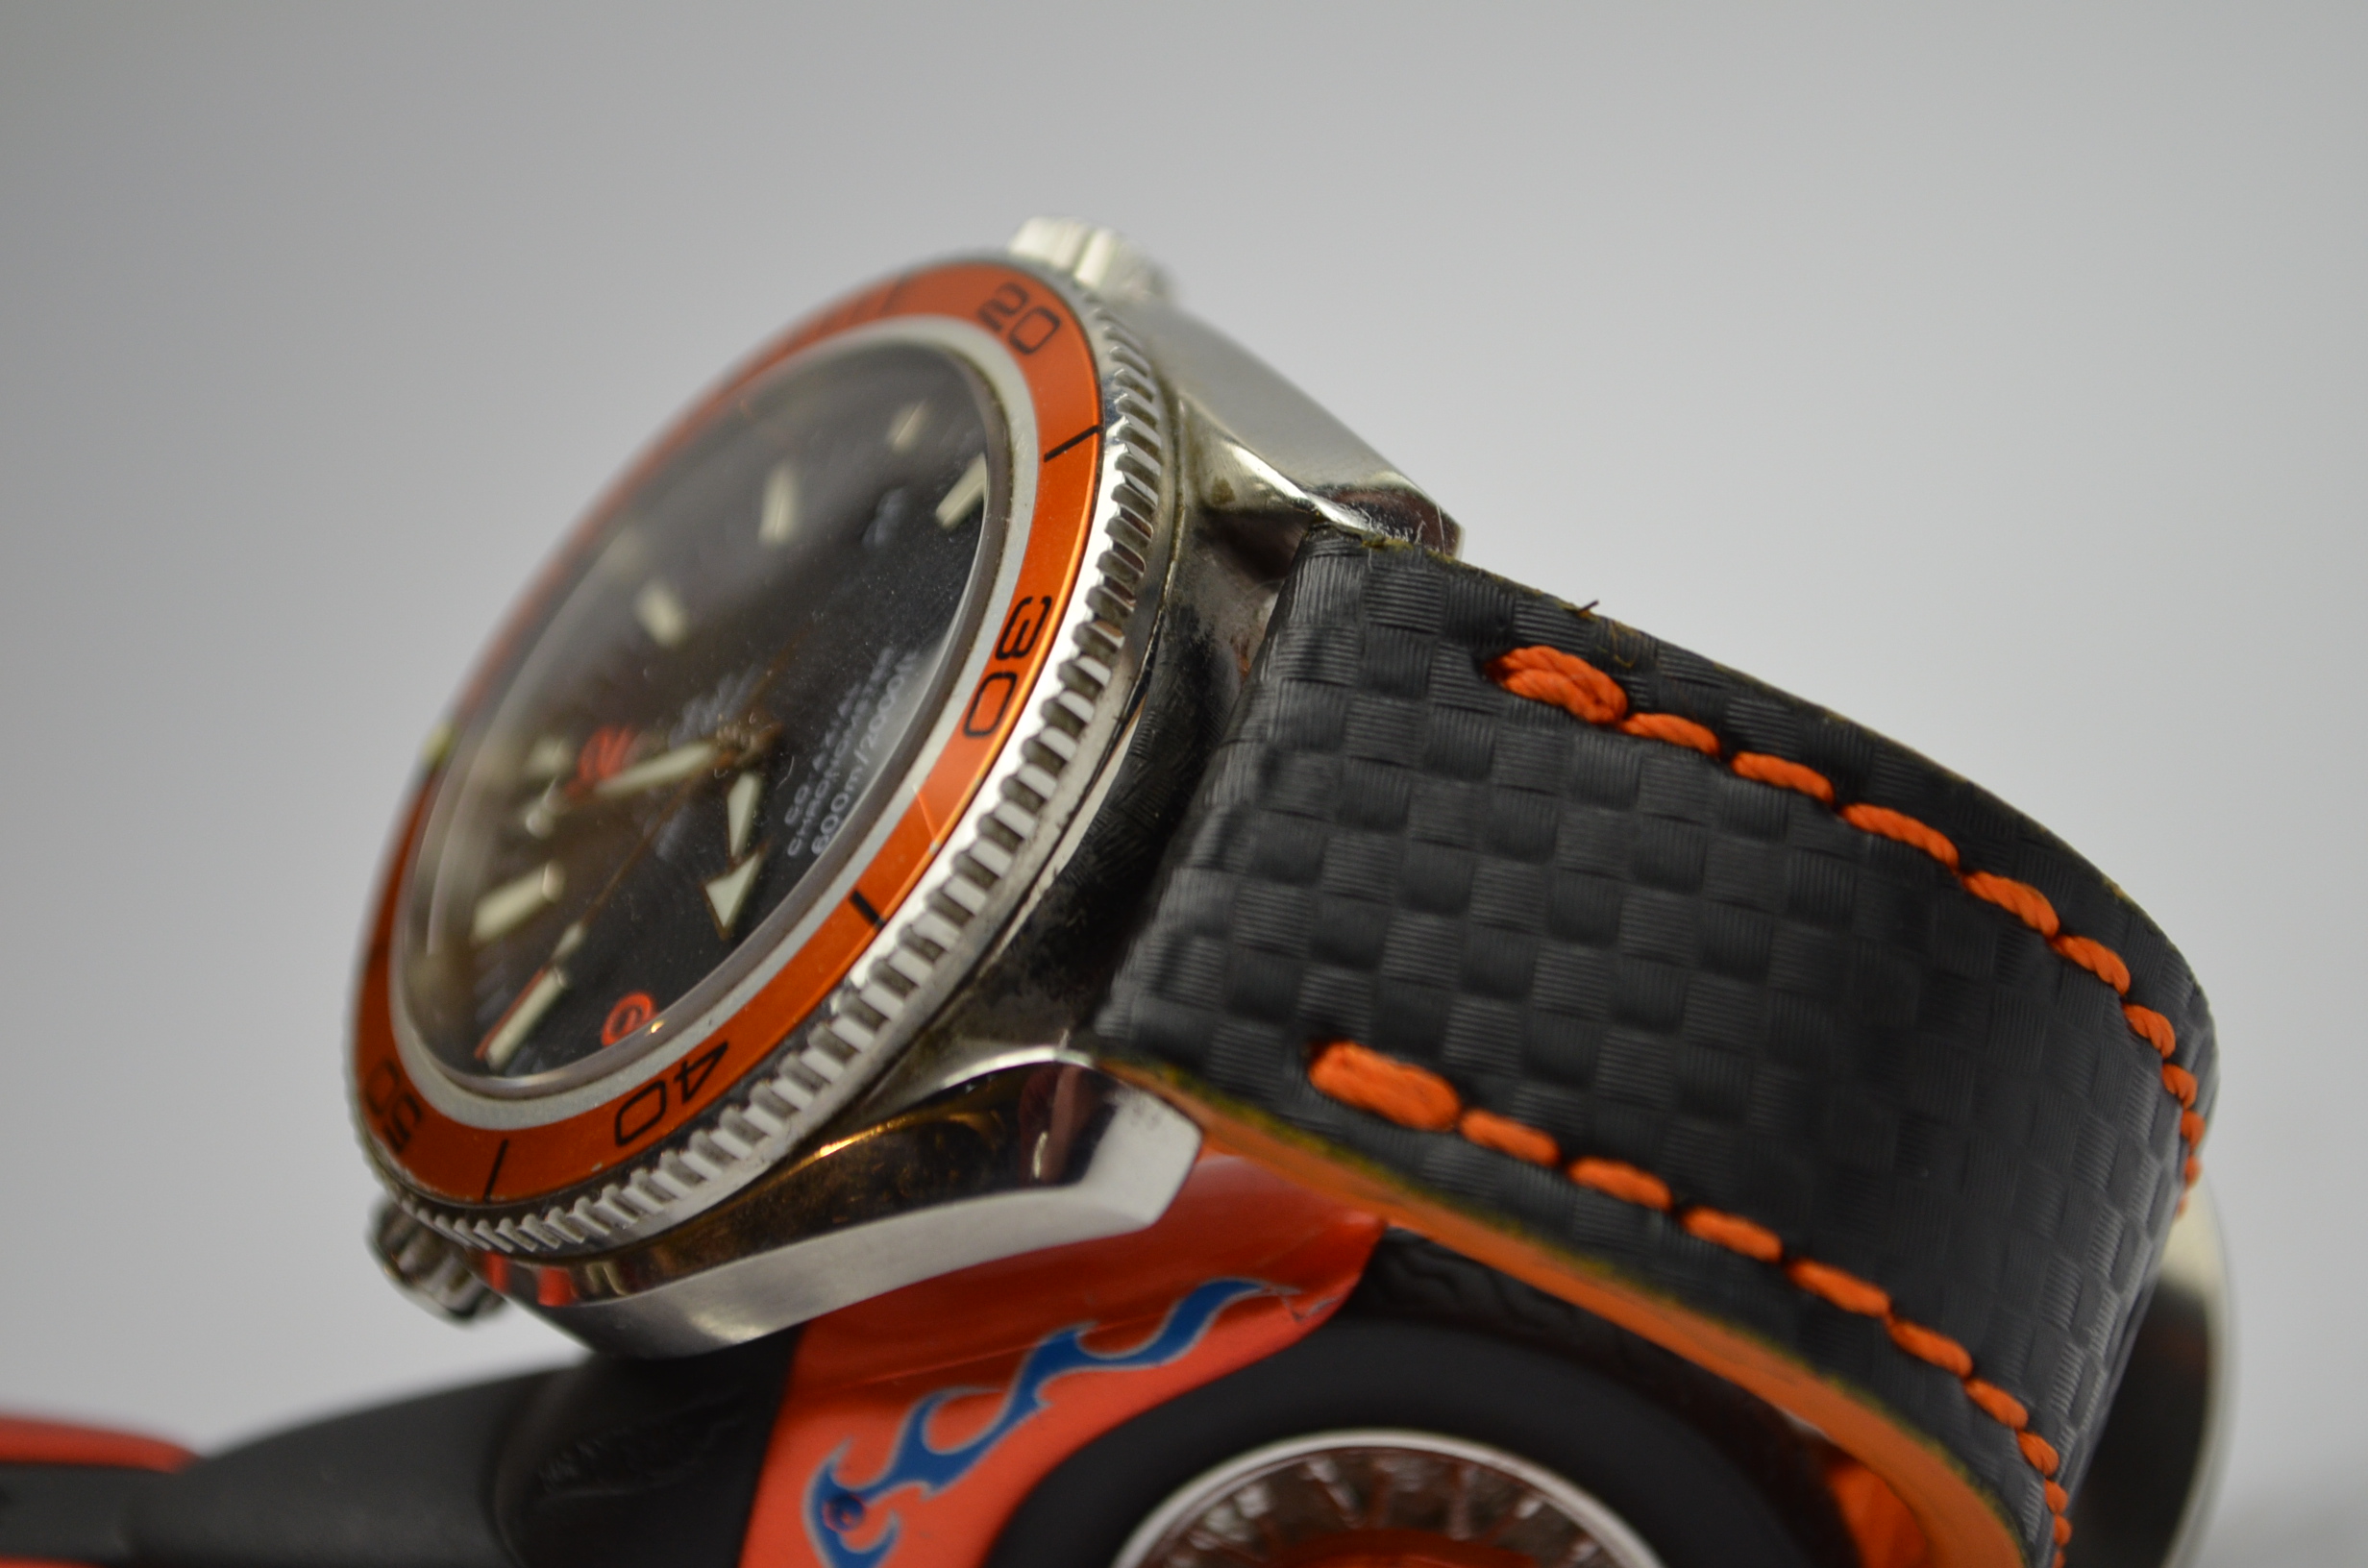 II ORANGE es una de nuestras correas reloj de piel hechas a mano, con piel de becerro. De color naranja, con un espesor de 3.5 - 4 mm.